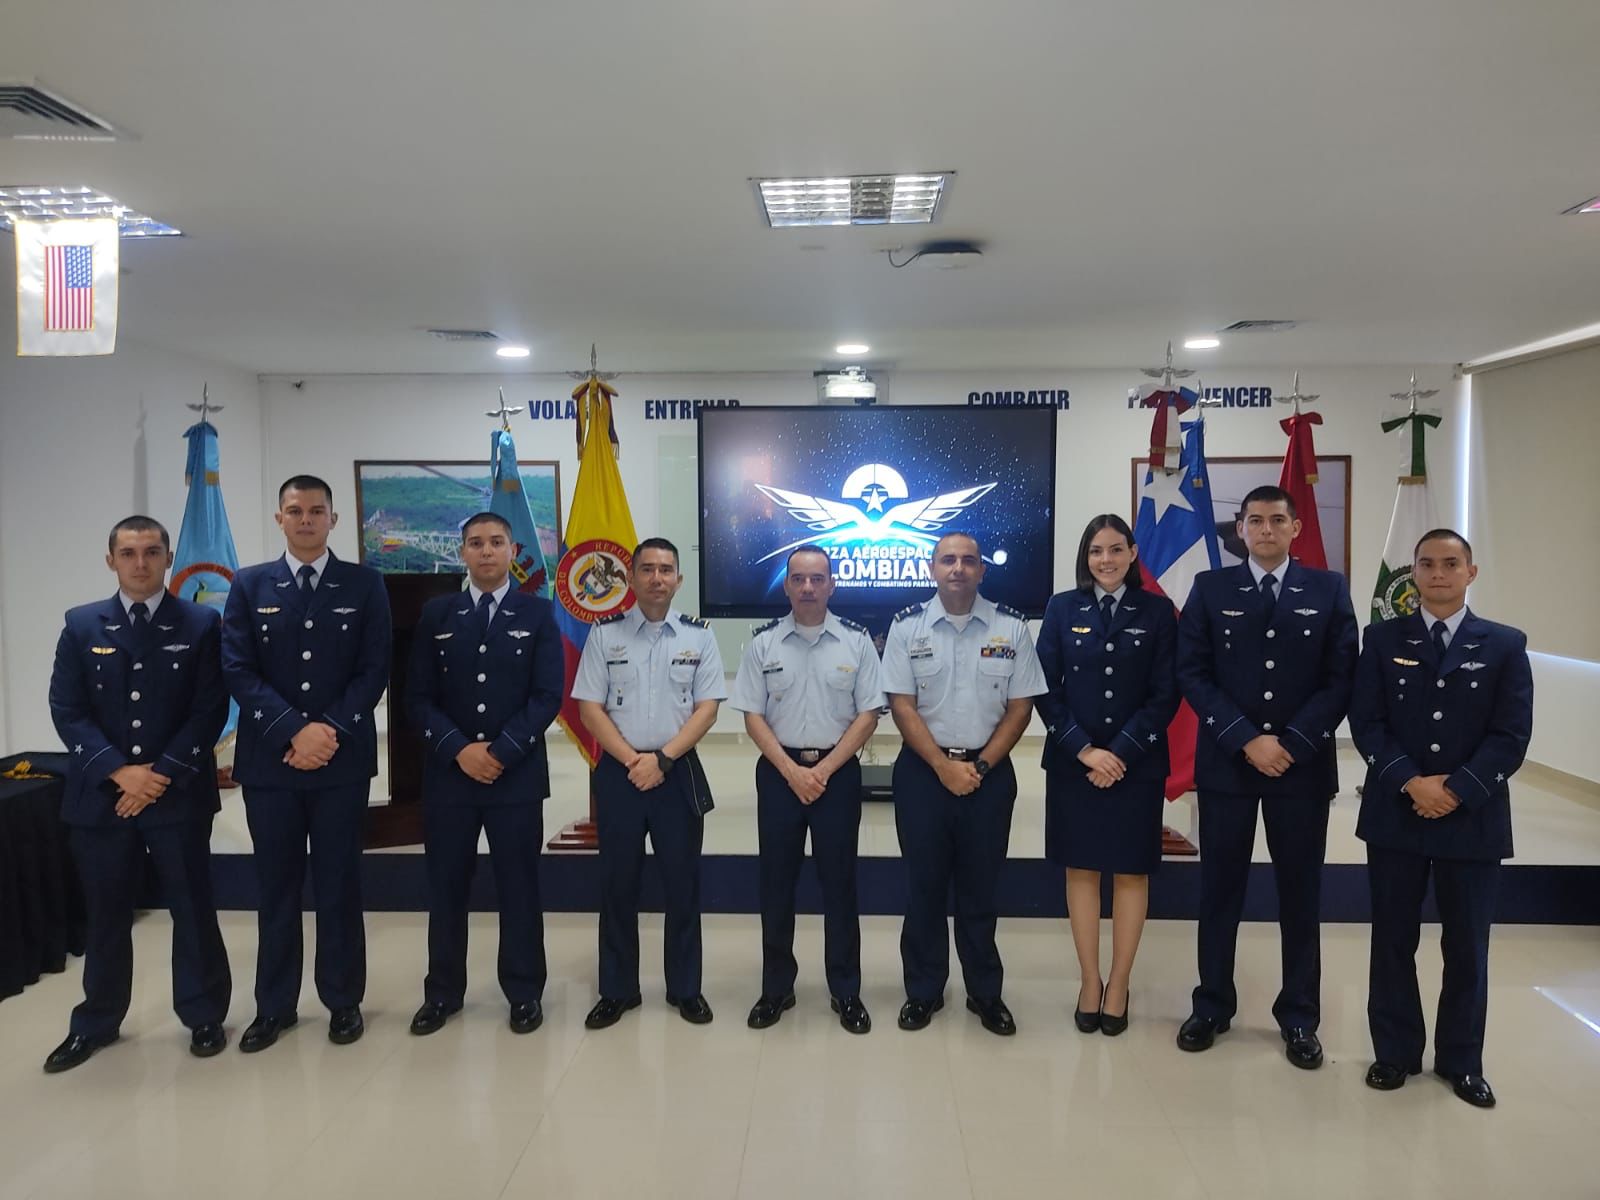 Pilotos de helicóptero chilenos formados en Colombia, fortalecerán la capacidad aérea en América del Sur